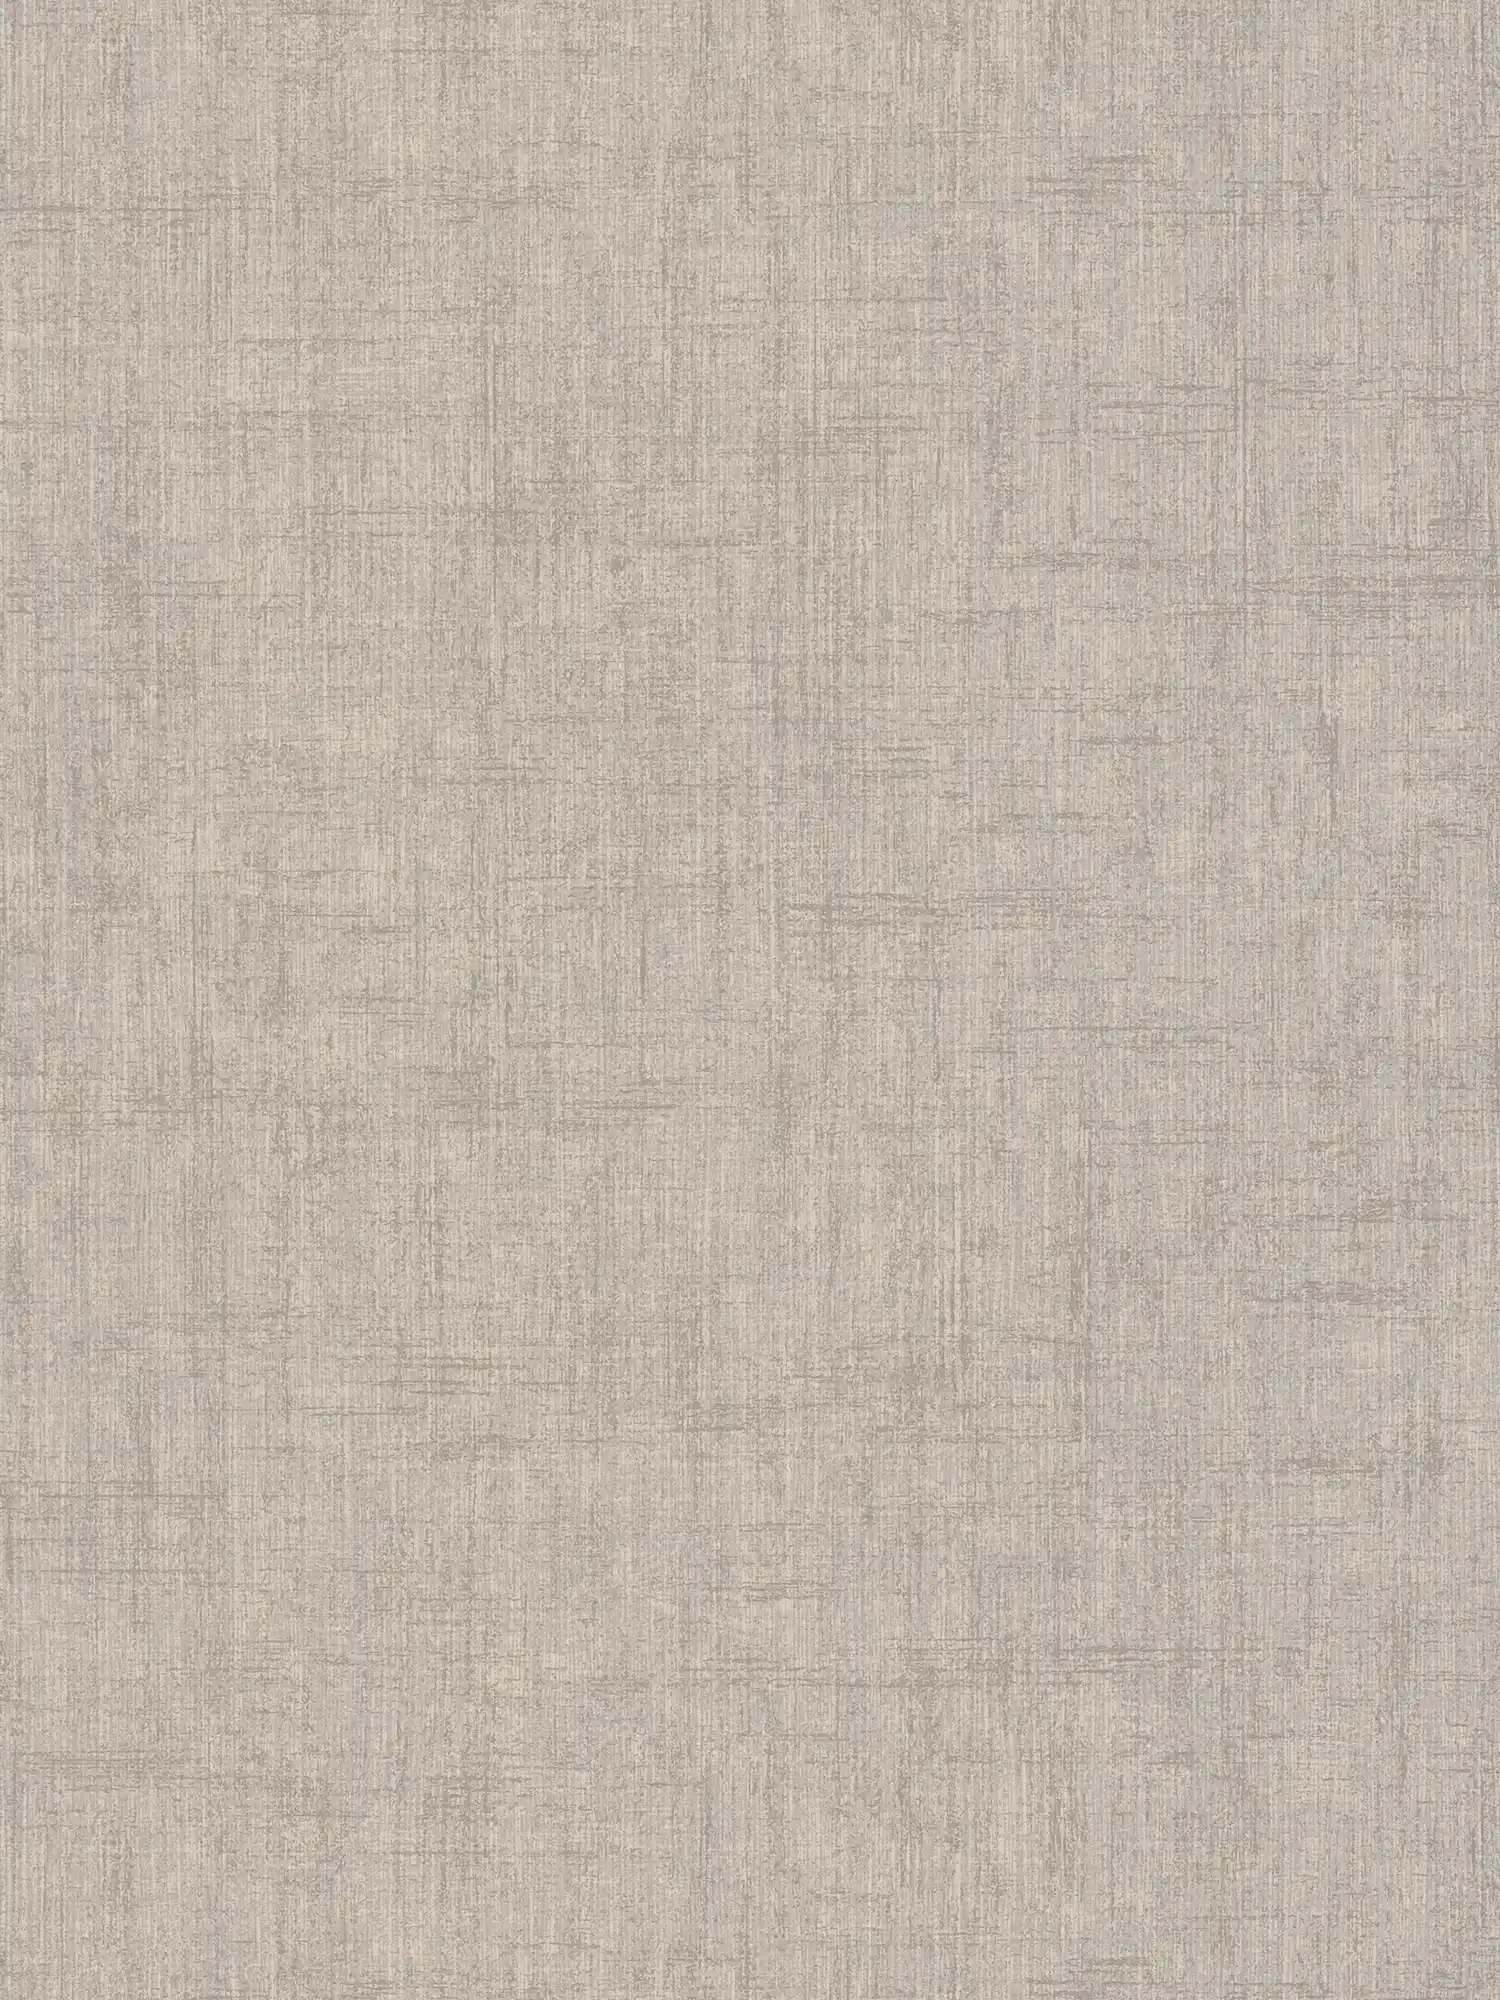 Papel pintado gris, aspecto de lino grueso - gris, beige
